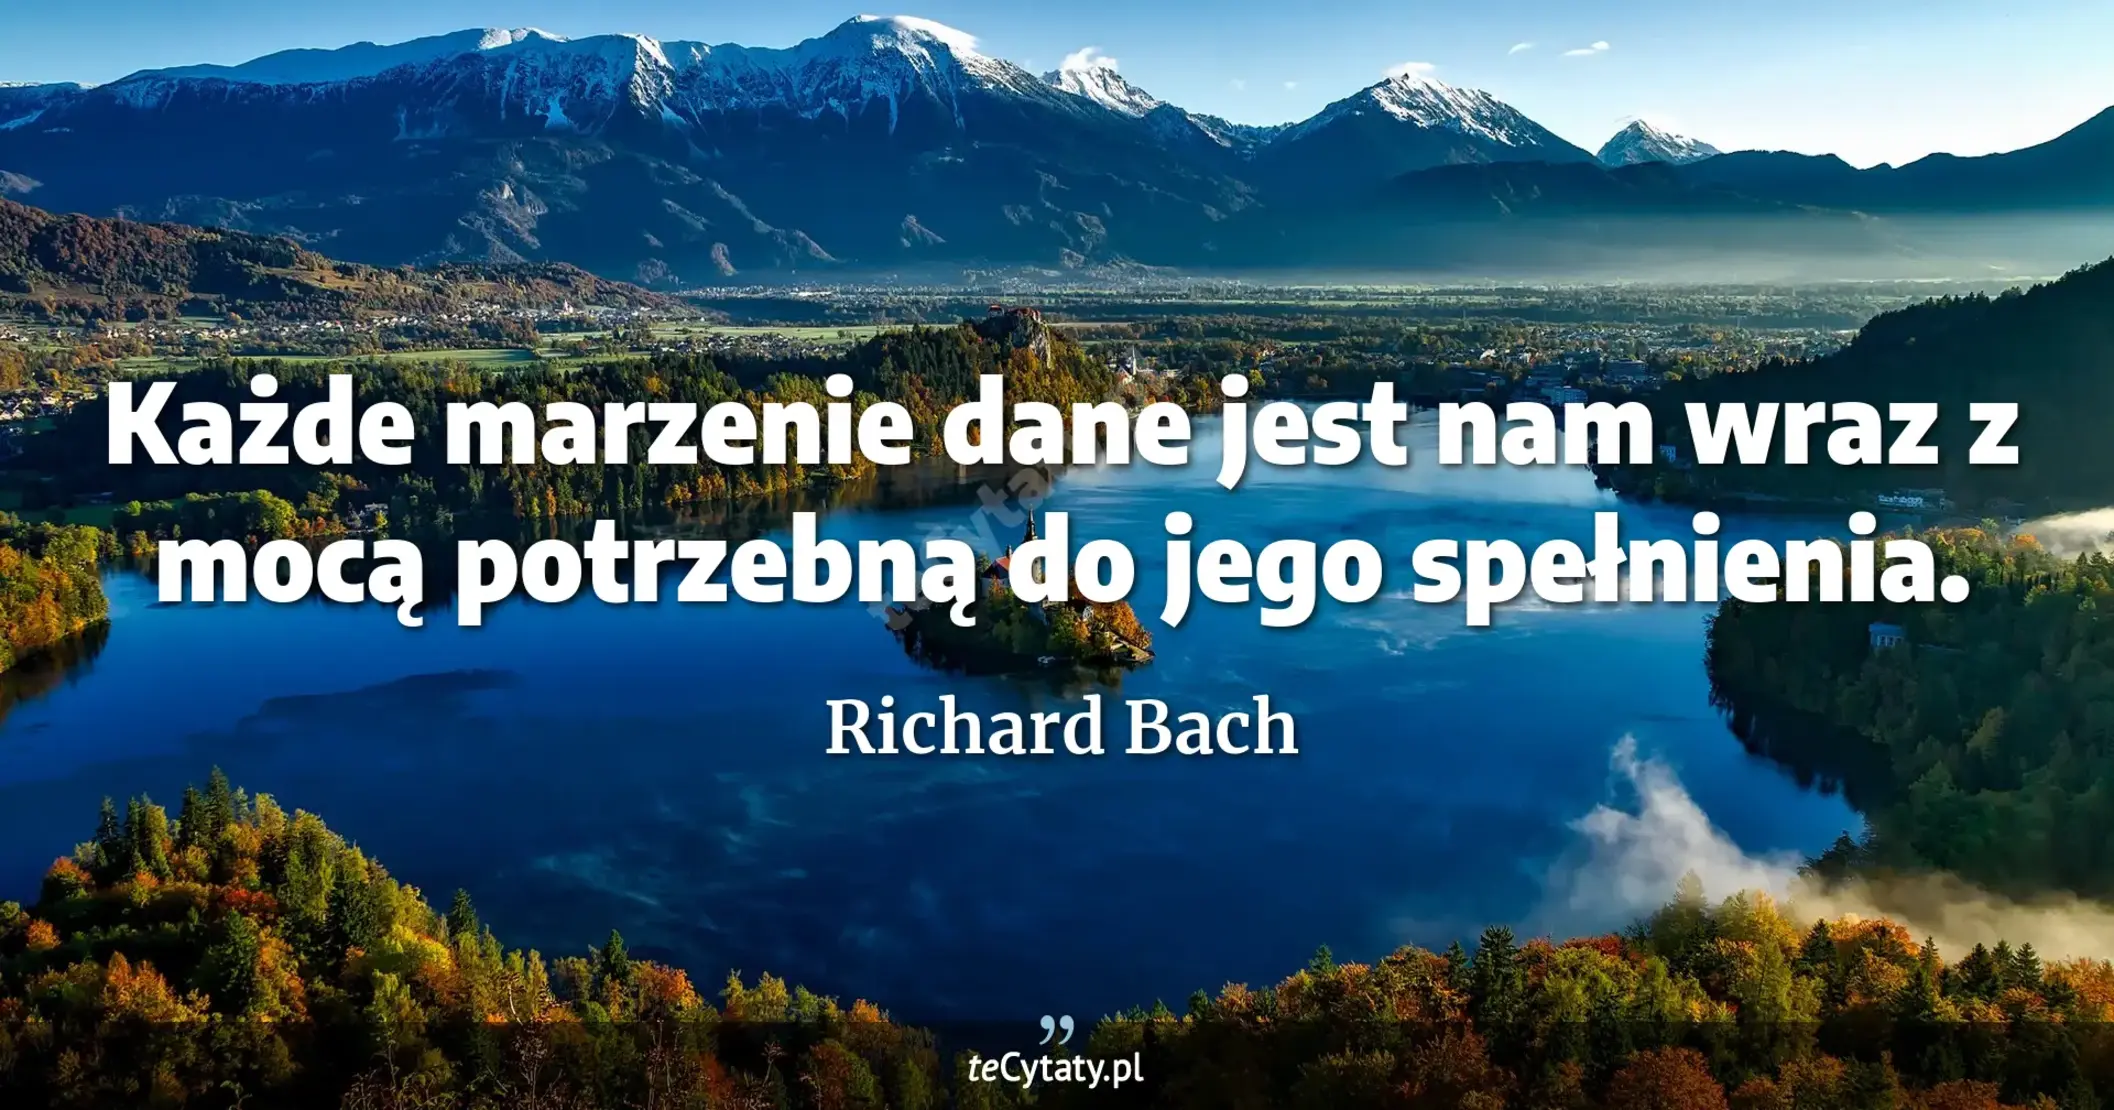 Każde marzenie dane jest nam wraz z mocą potrzebną do jego spełnienia. - Richard Bach